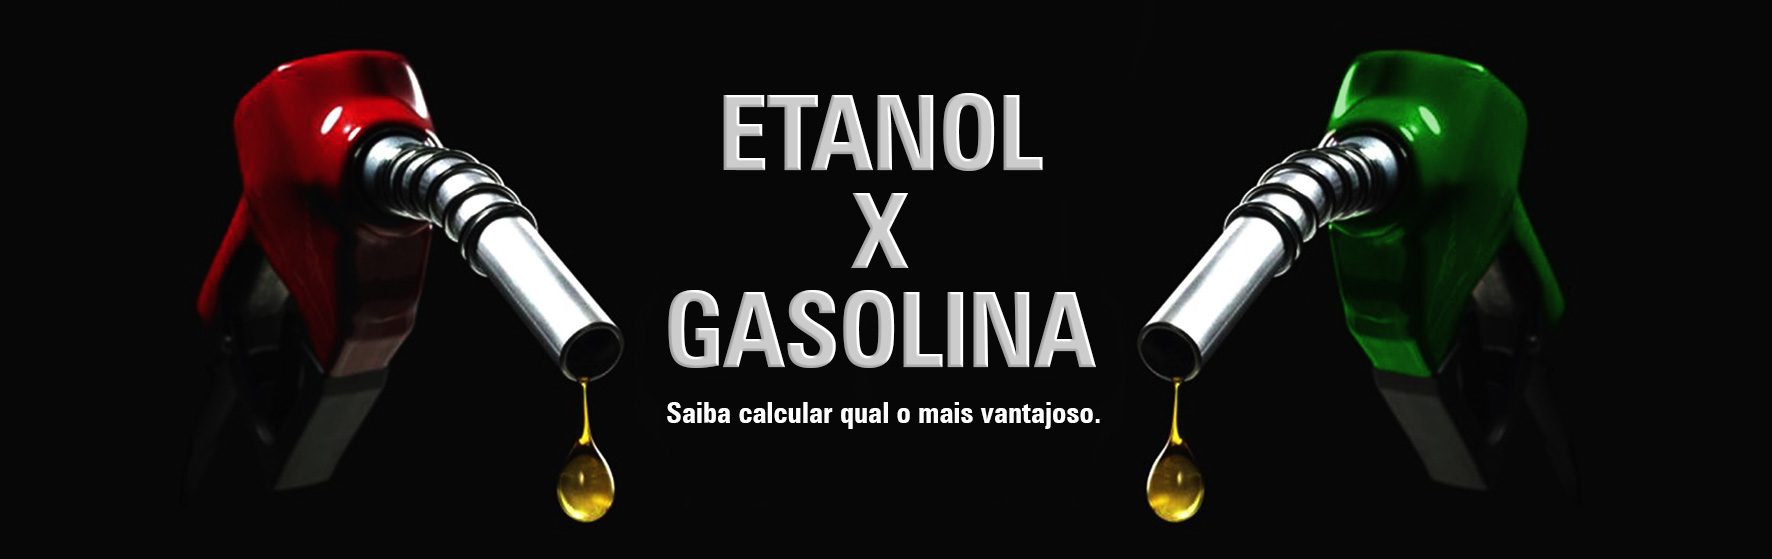 Etanol ou Gasolina? Tire sua dúvida!